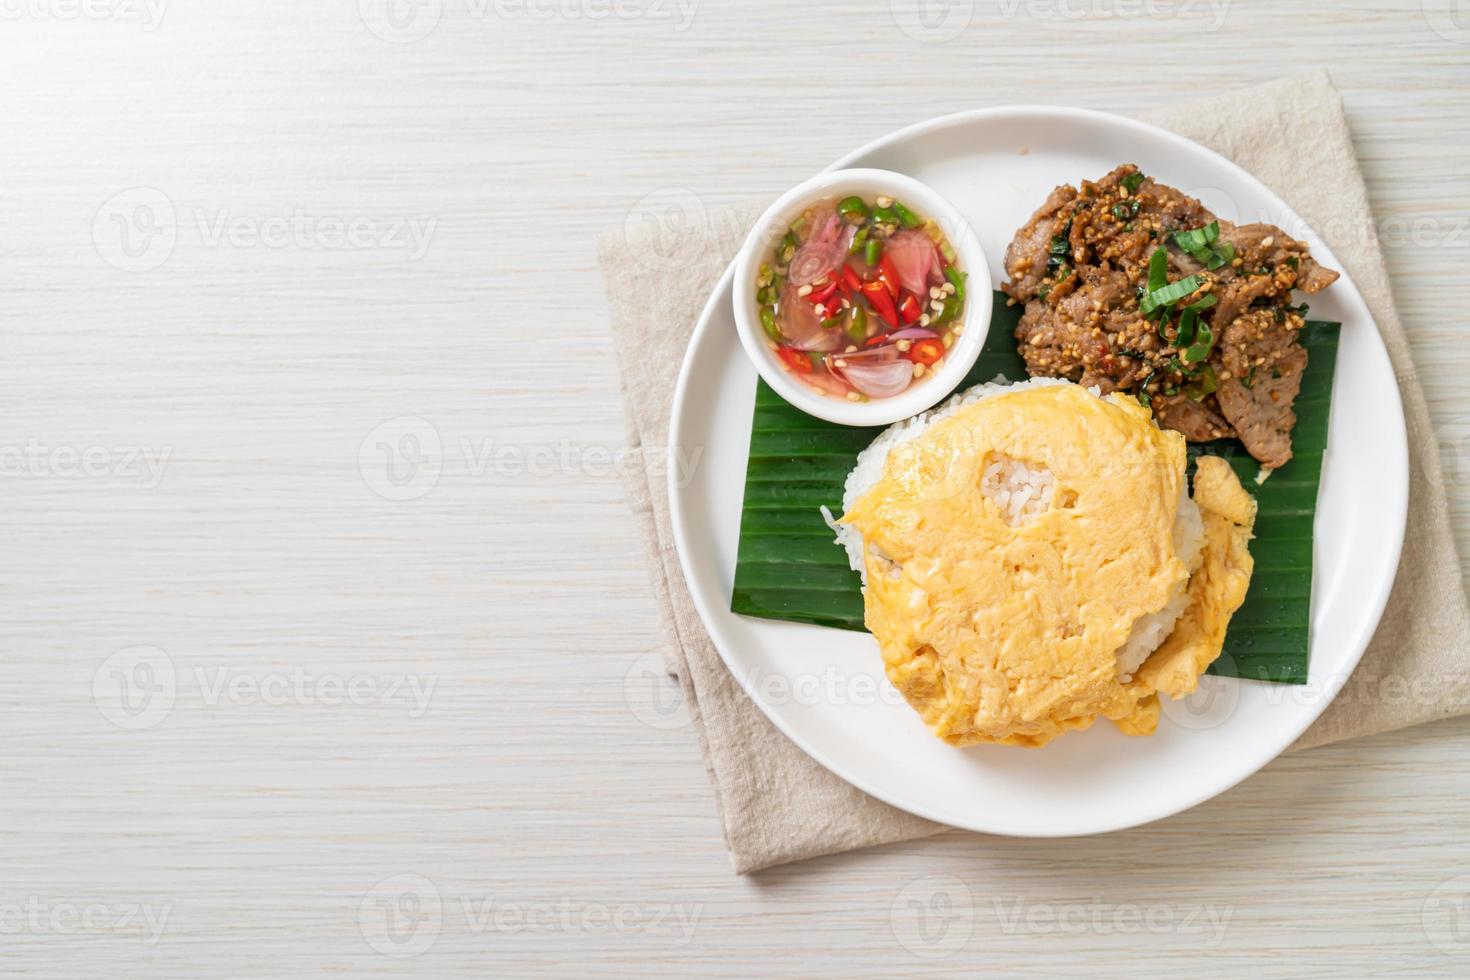 uovo su riso guarnito con maiale alla griglia e salsa piccante - stile asiatico foto